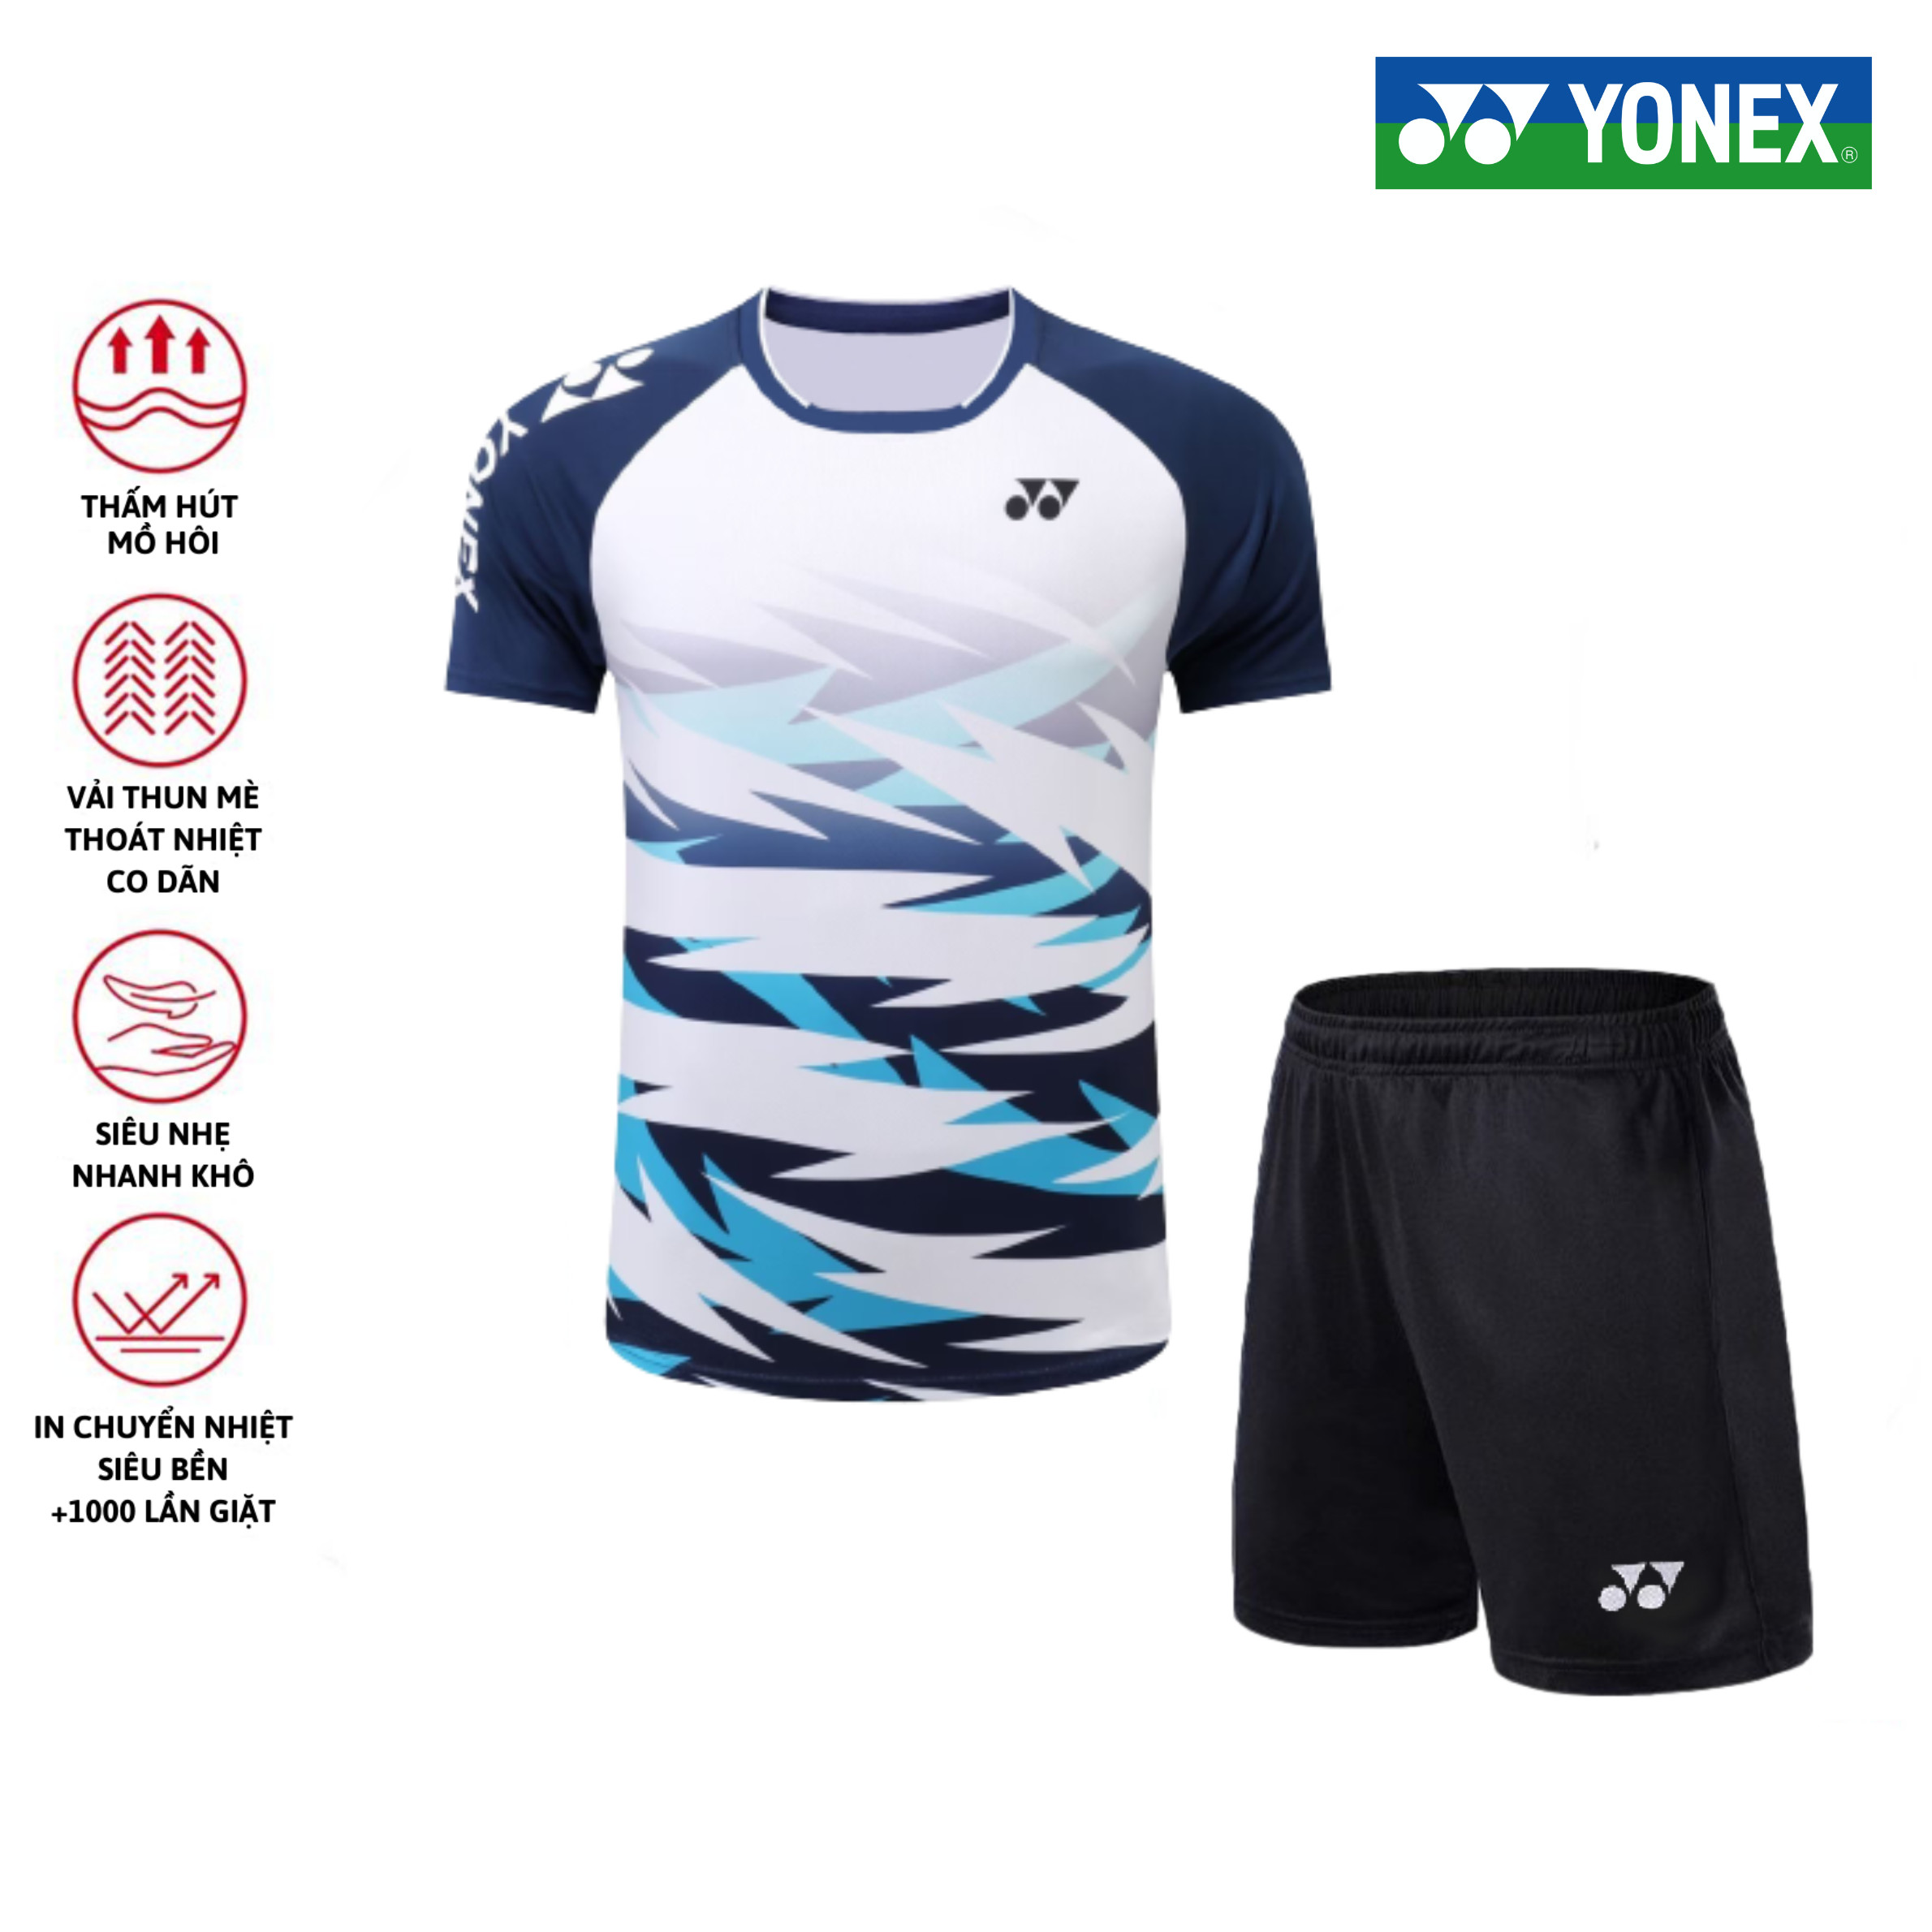 Áo cầu lông, quần cầu lông Yonex chuyên nghiệp mới nhất sử dụng tập luyện và thi đấu cầu lông A415